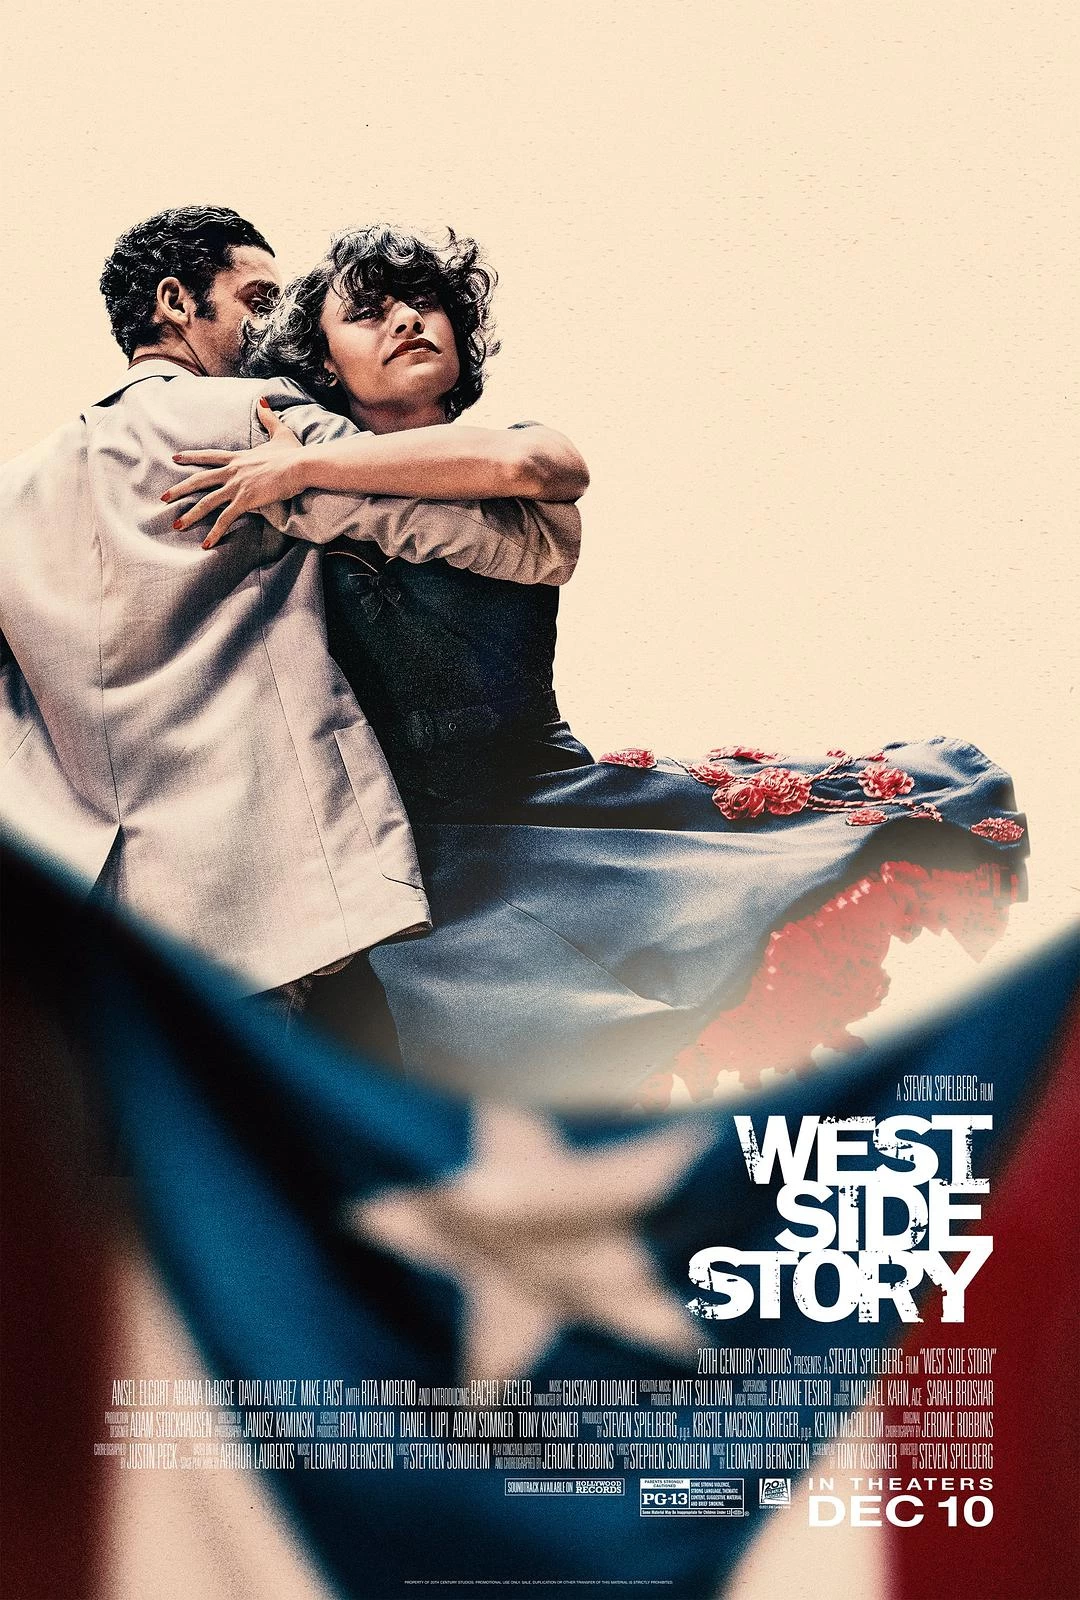 西区故事 蓝光原盘下载+高清MKV版/西城故事(港/台) 2021 West Side Story 44.1G